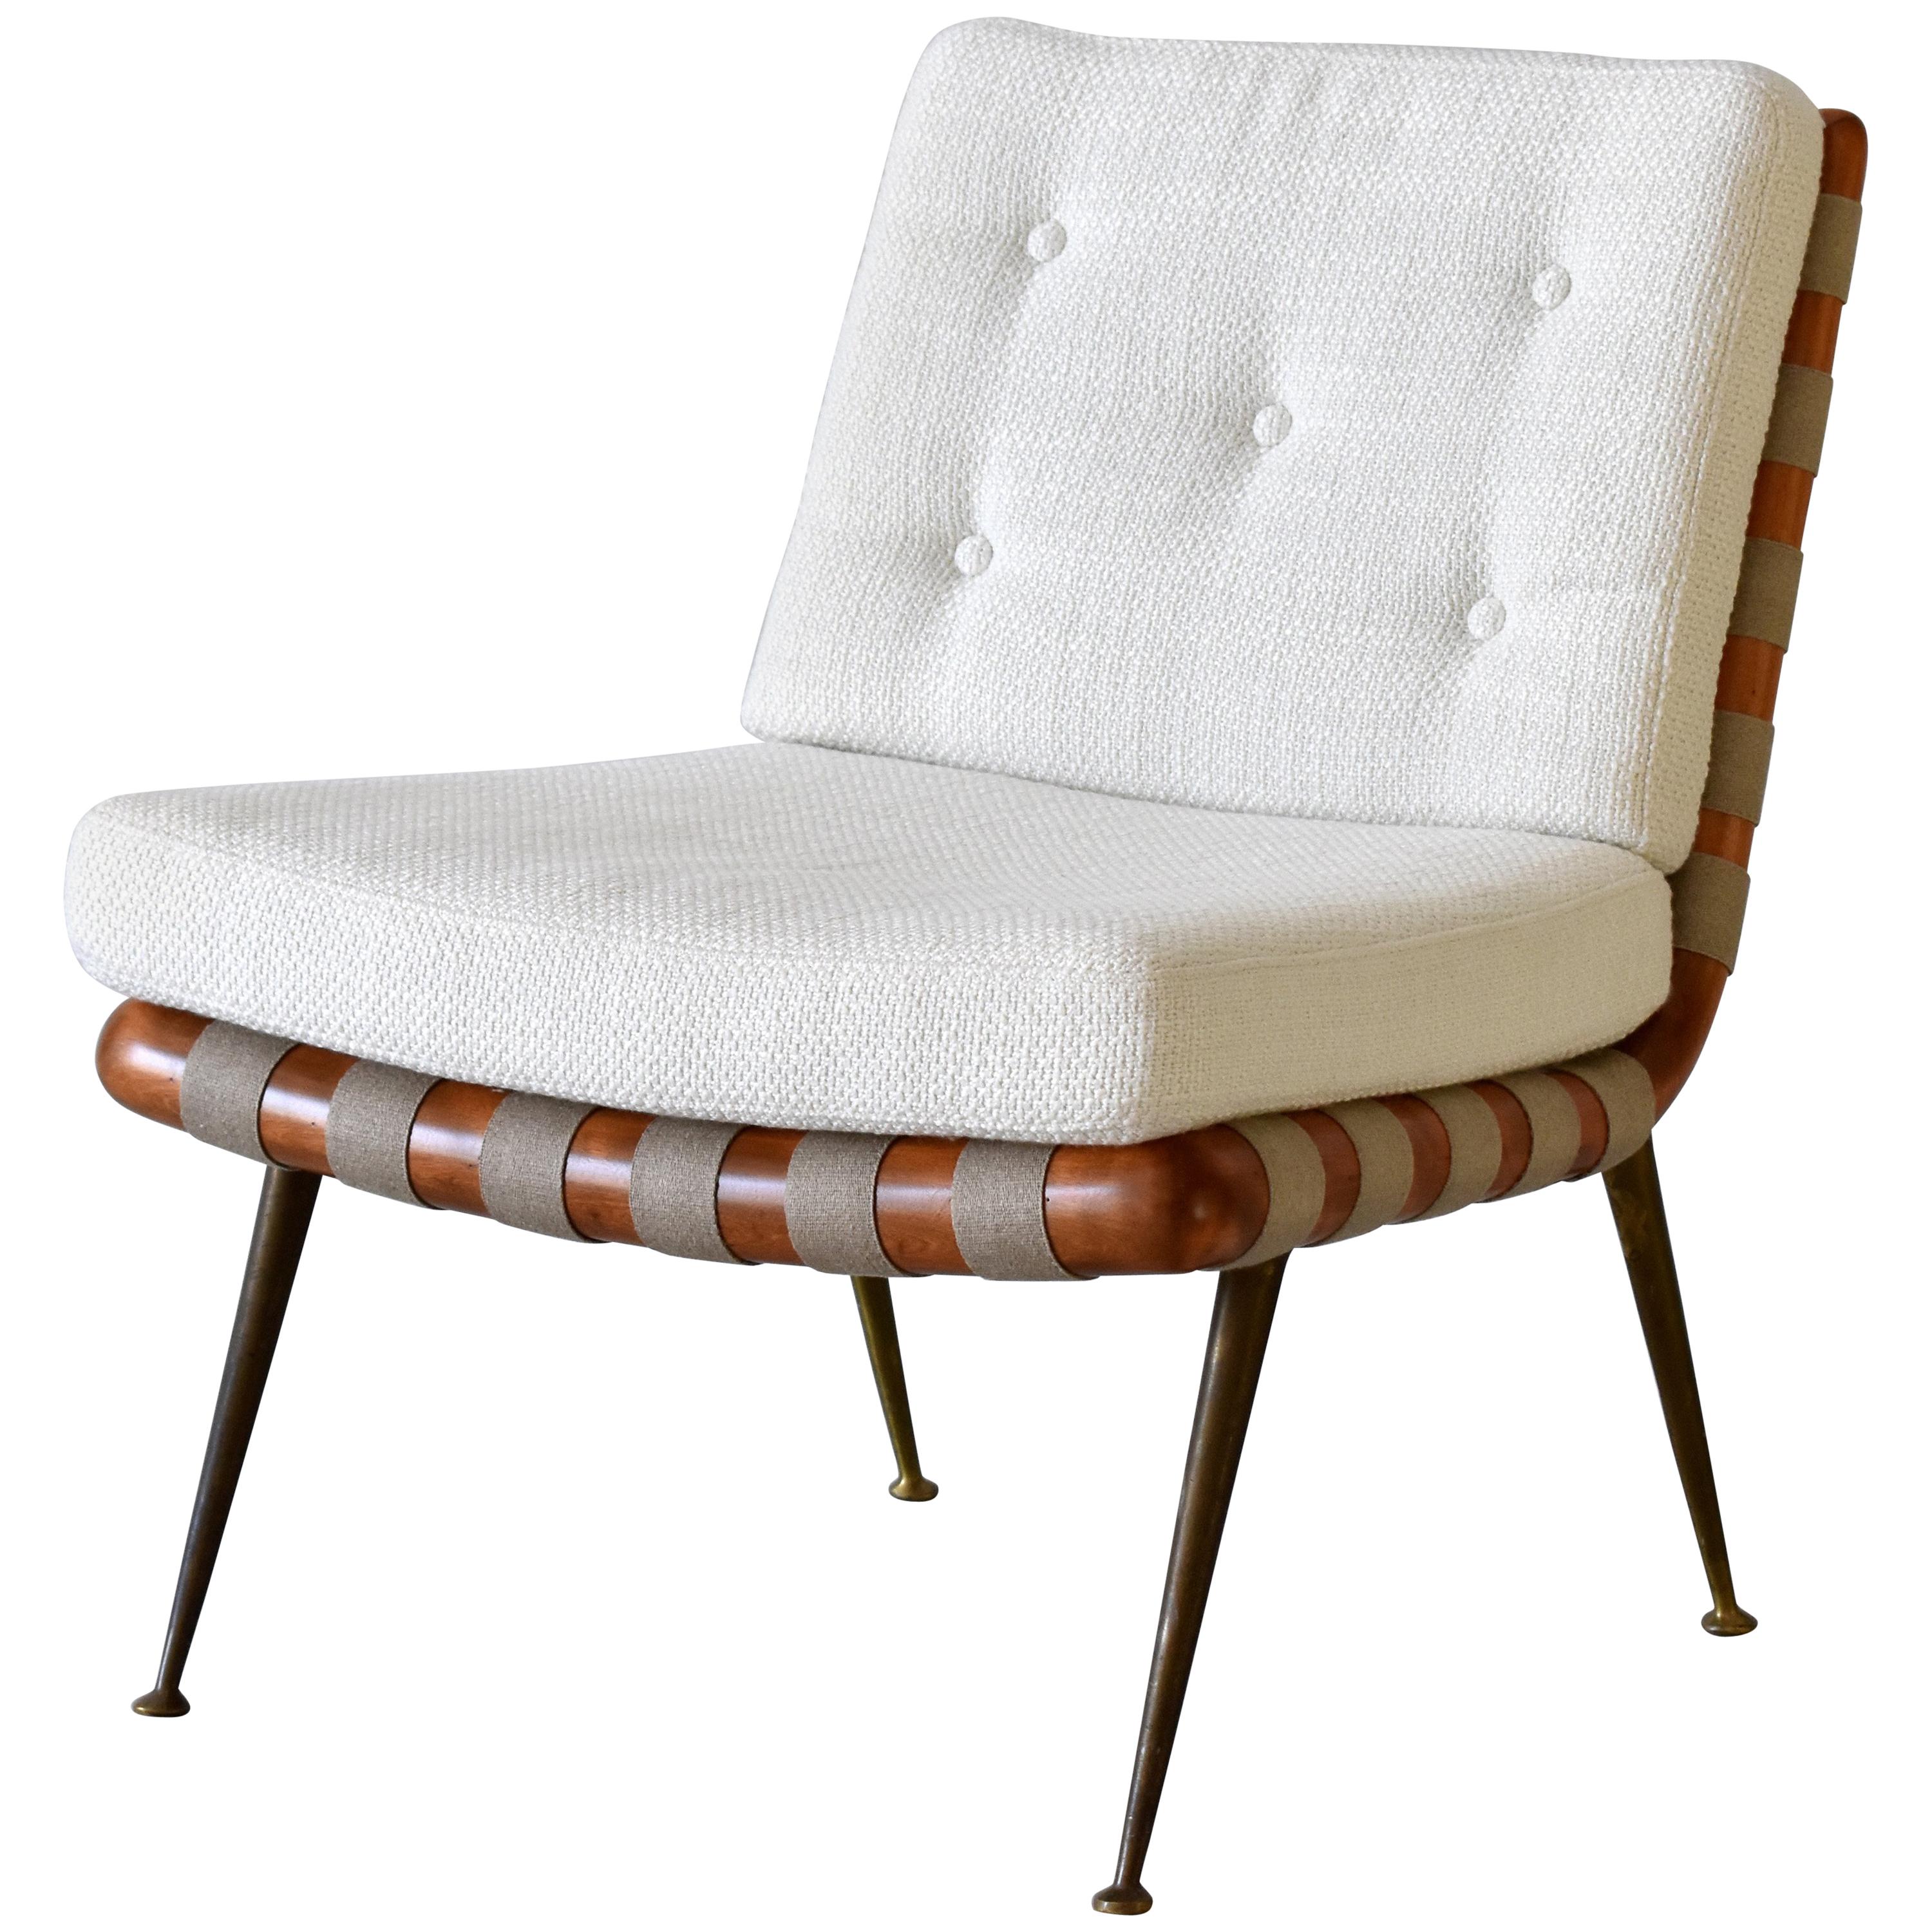 T.H. Robsjohn-Gibbings, Slipper or Lounge Chair, Walnut, Fabric, Brass, 1950s